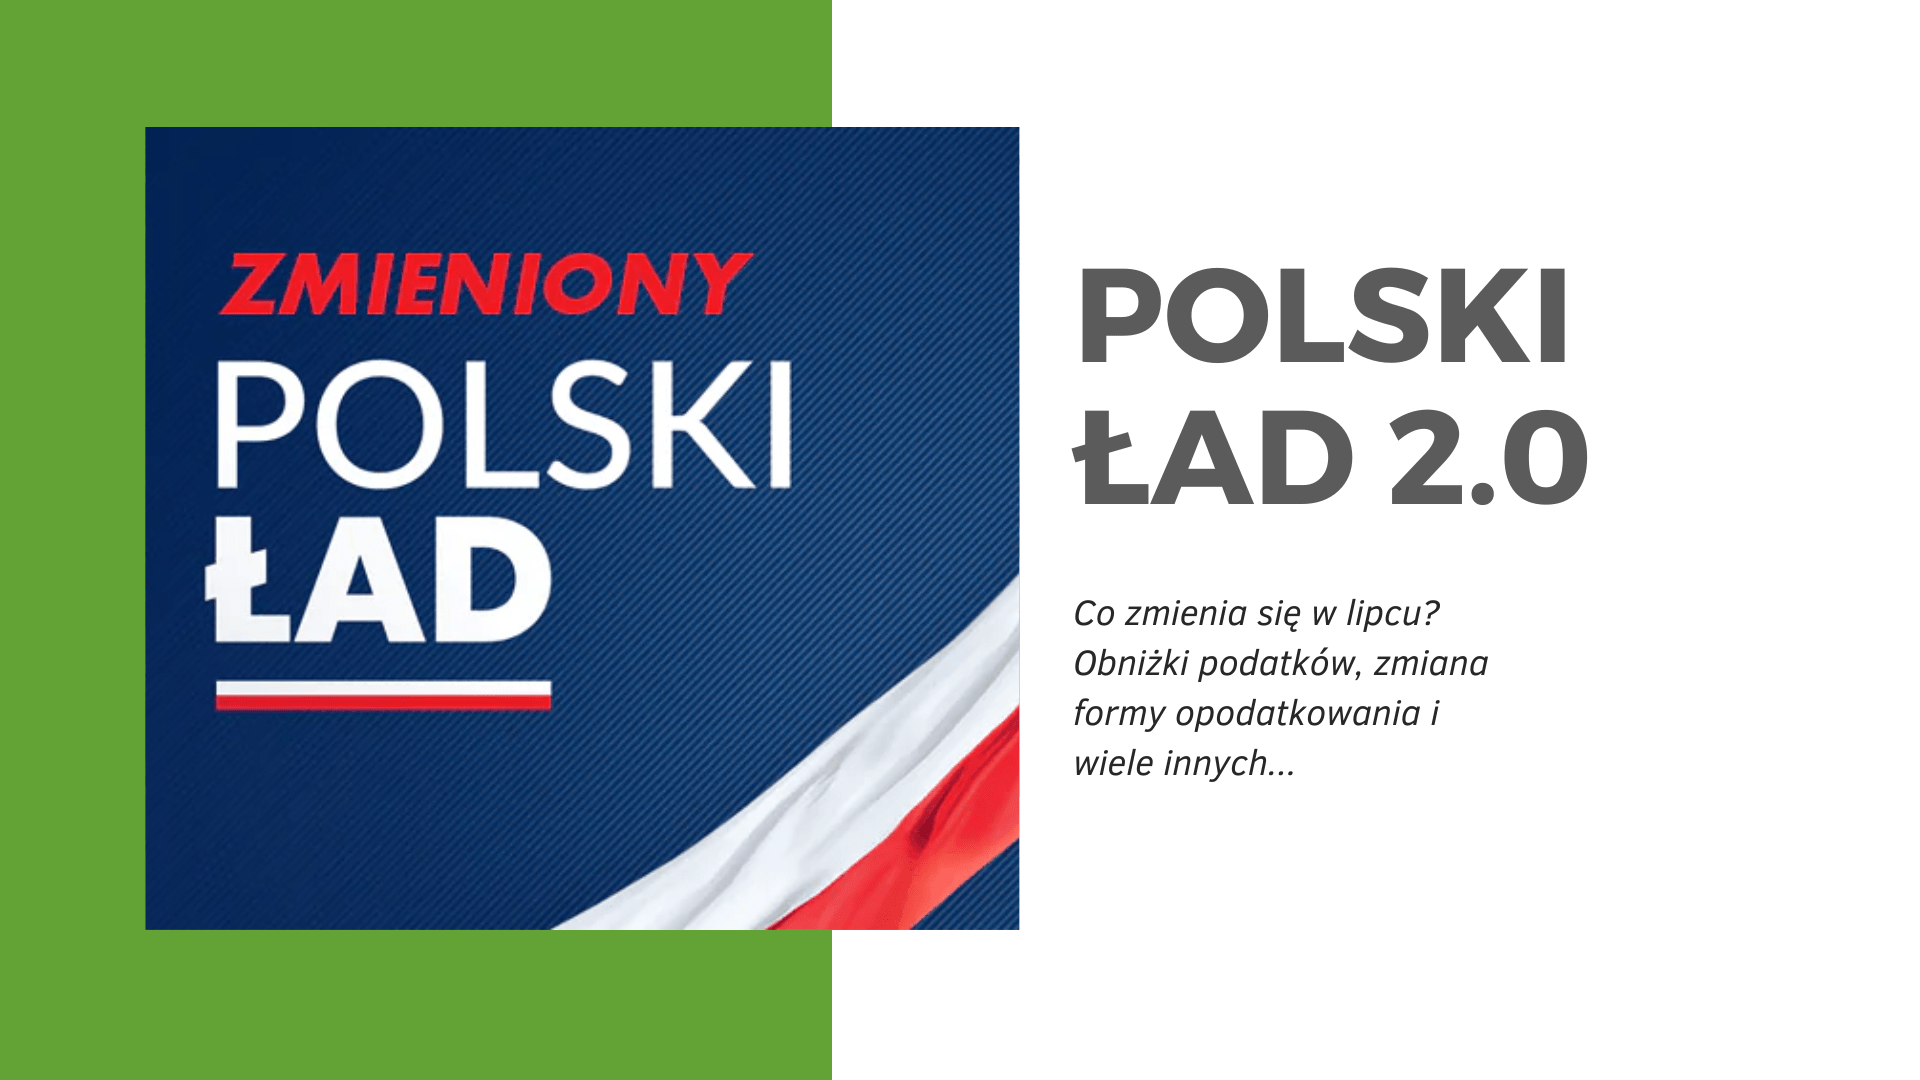 W lipcu Polski Ład 2.0. Jak go odczujemy?